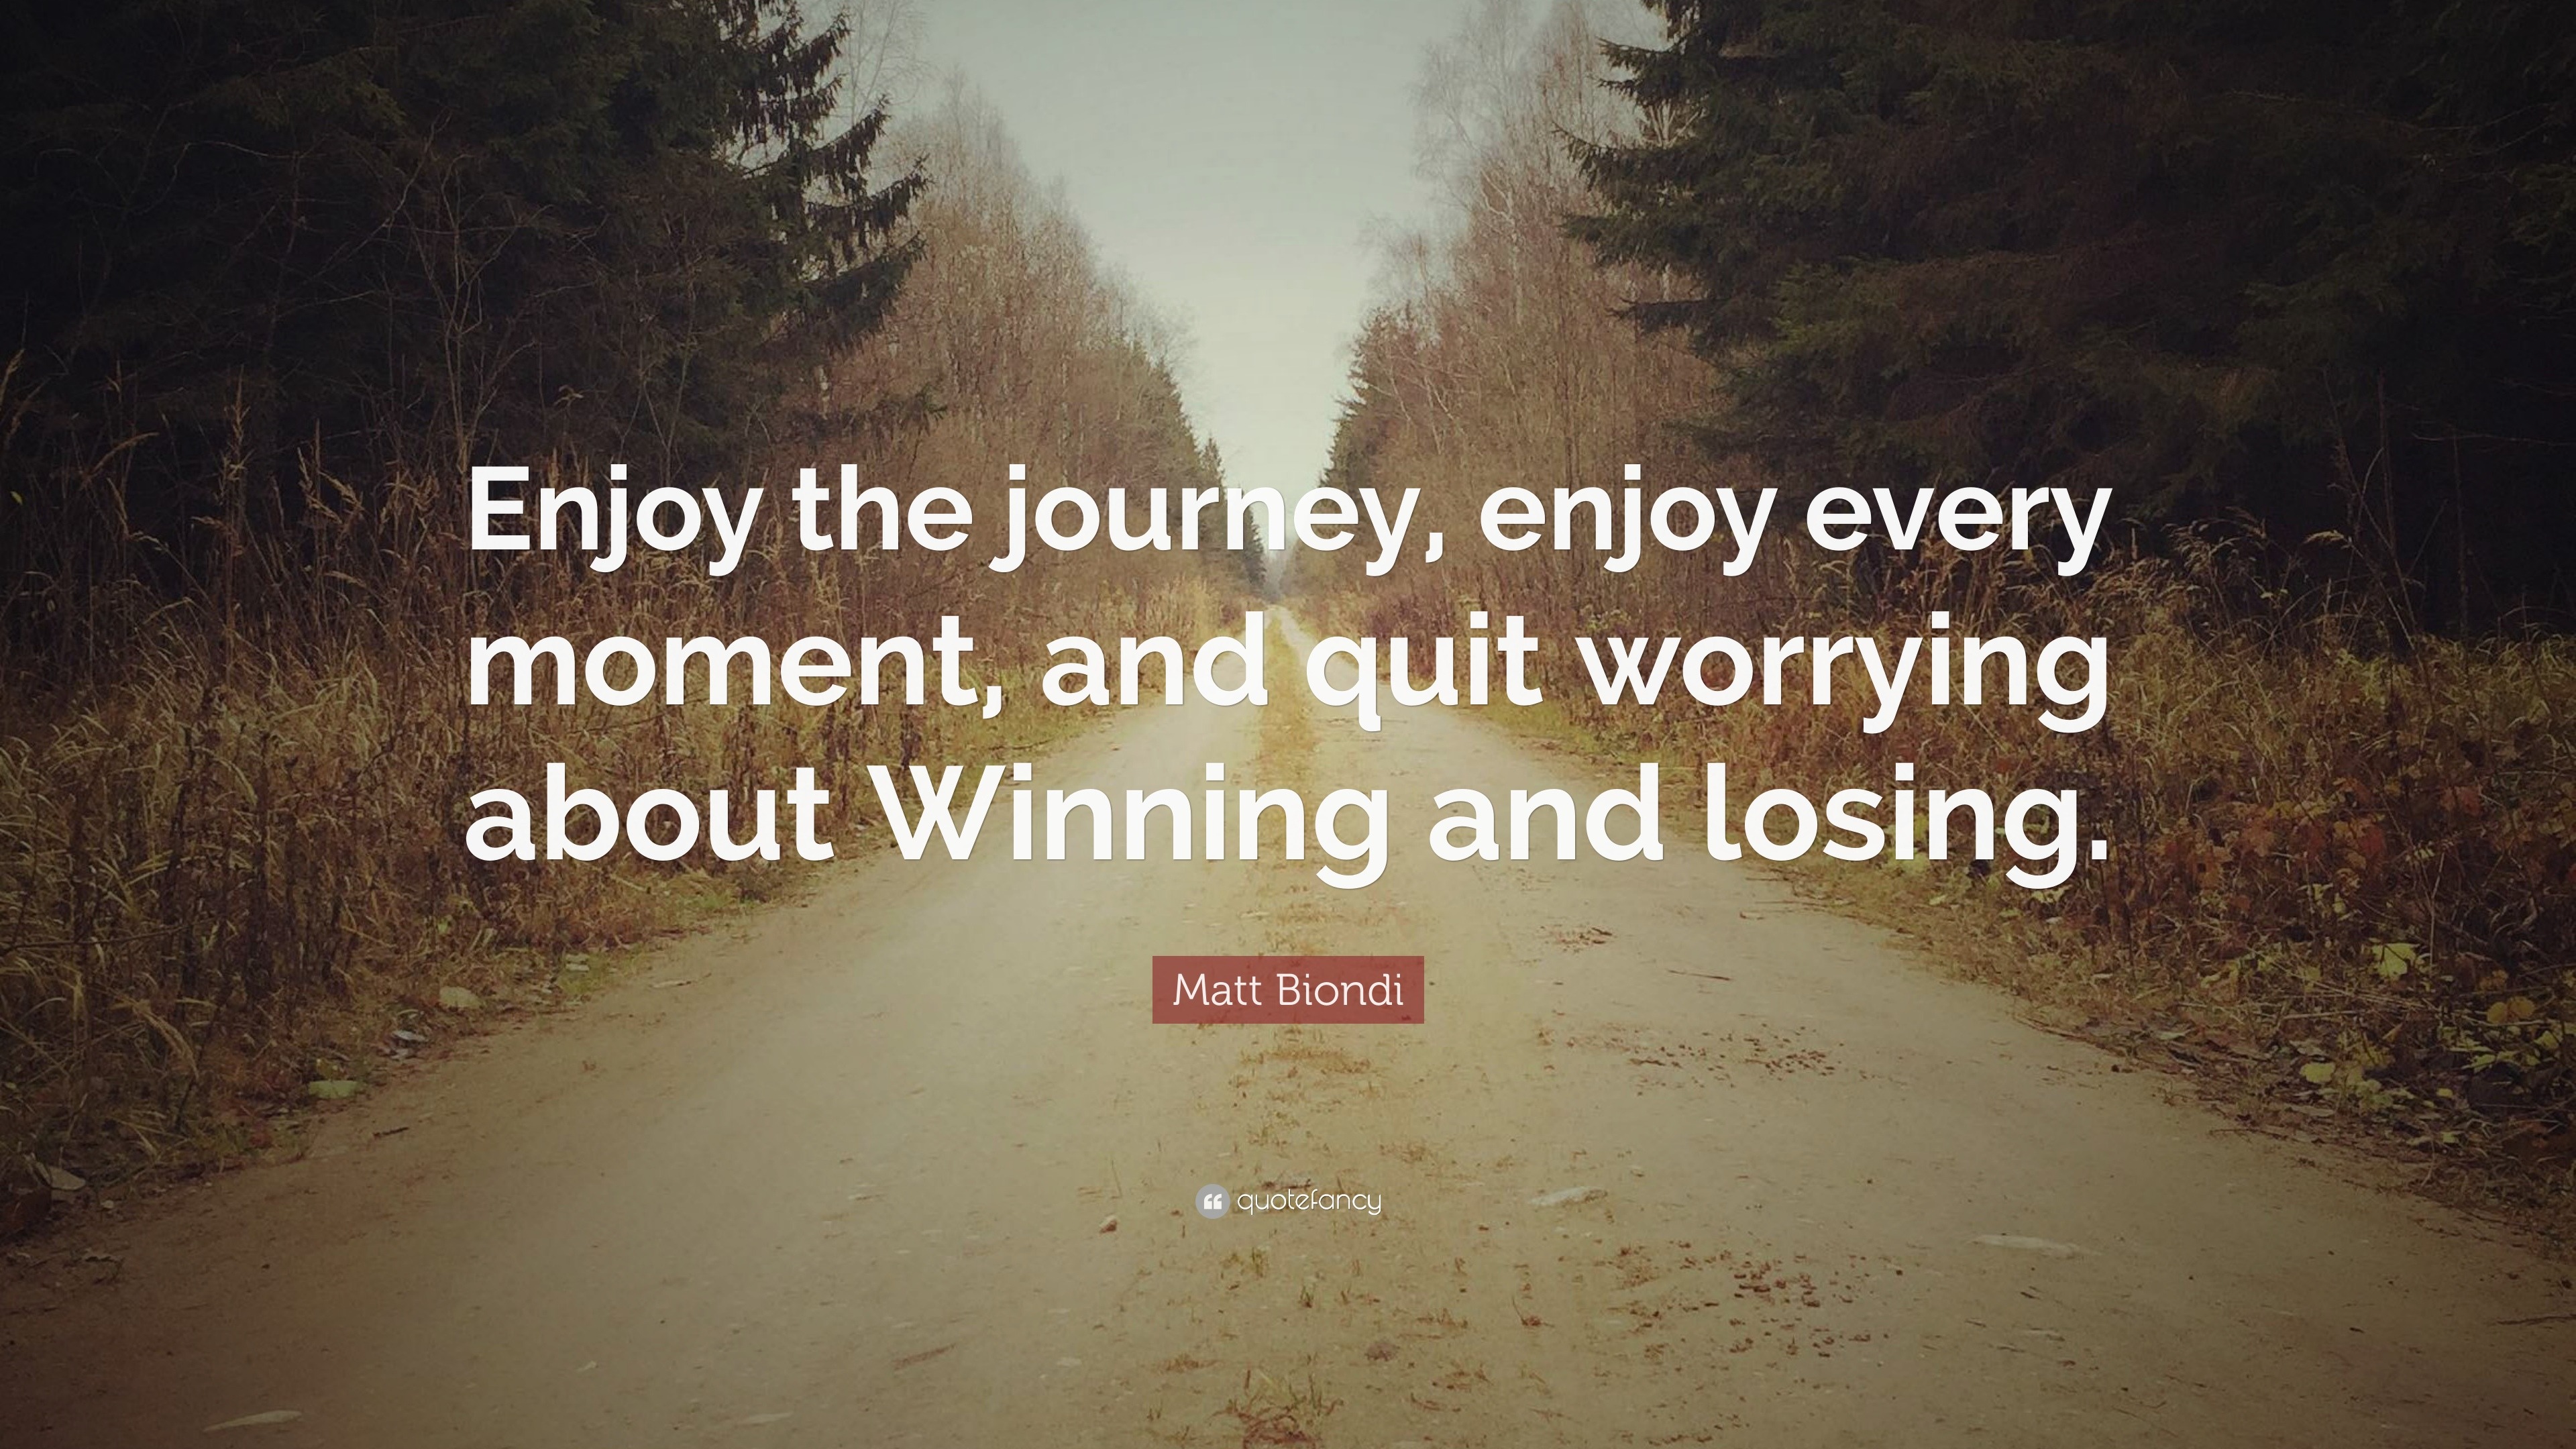 enjoy the journey quote